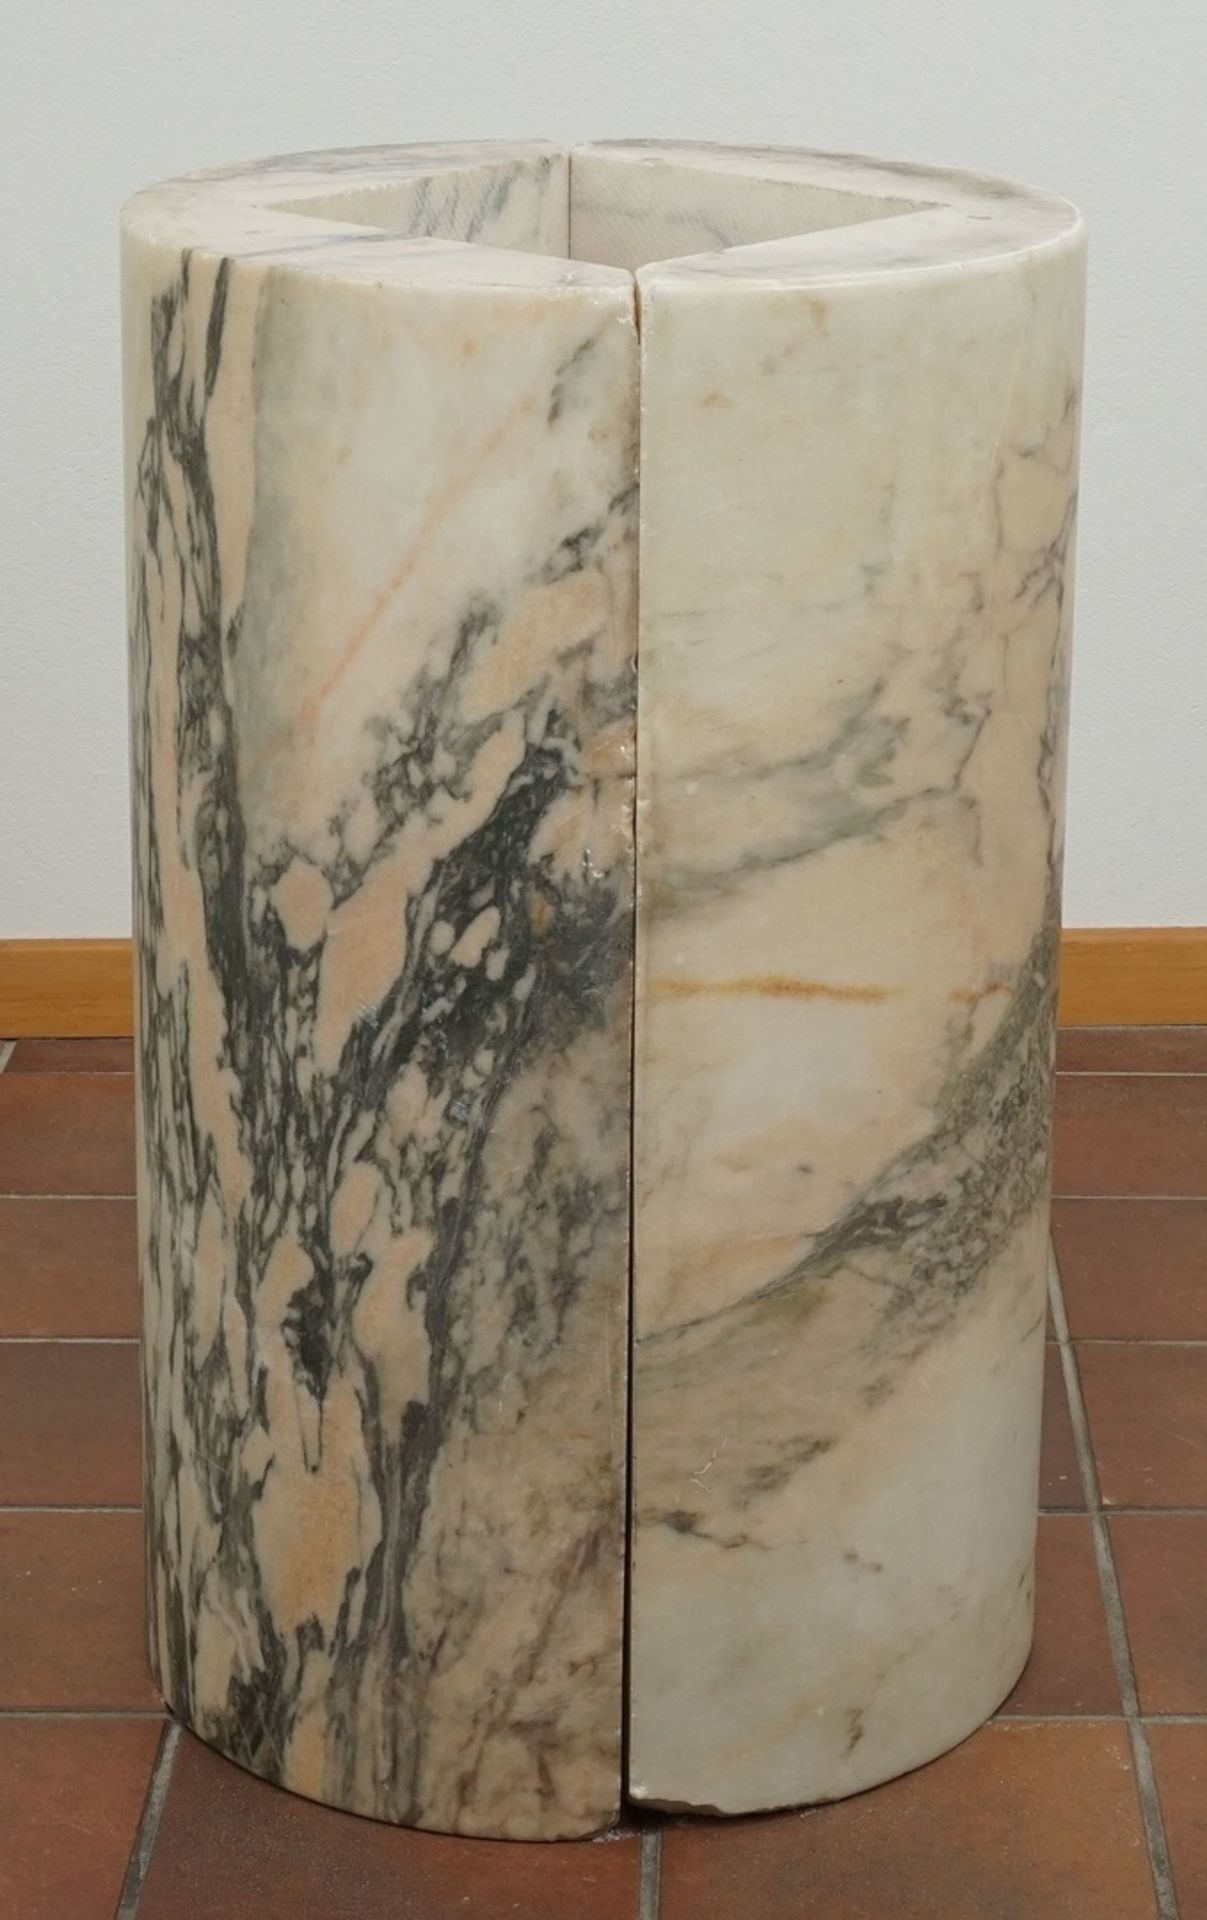 Marmor Stele / Postamentzweiteilig, schwarz-weiß-grün-orange marmoriert, altersgemäßer Zustand, - Bild 2 aus 3